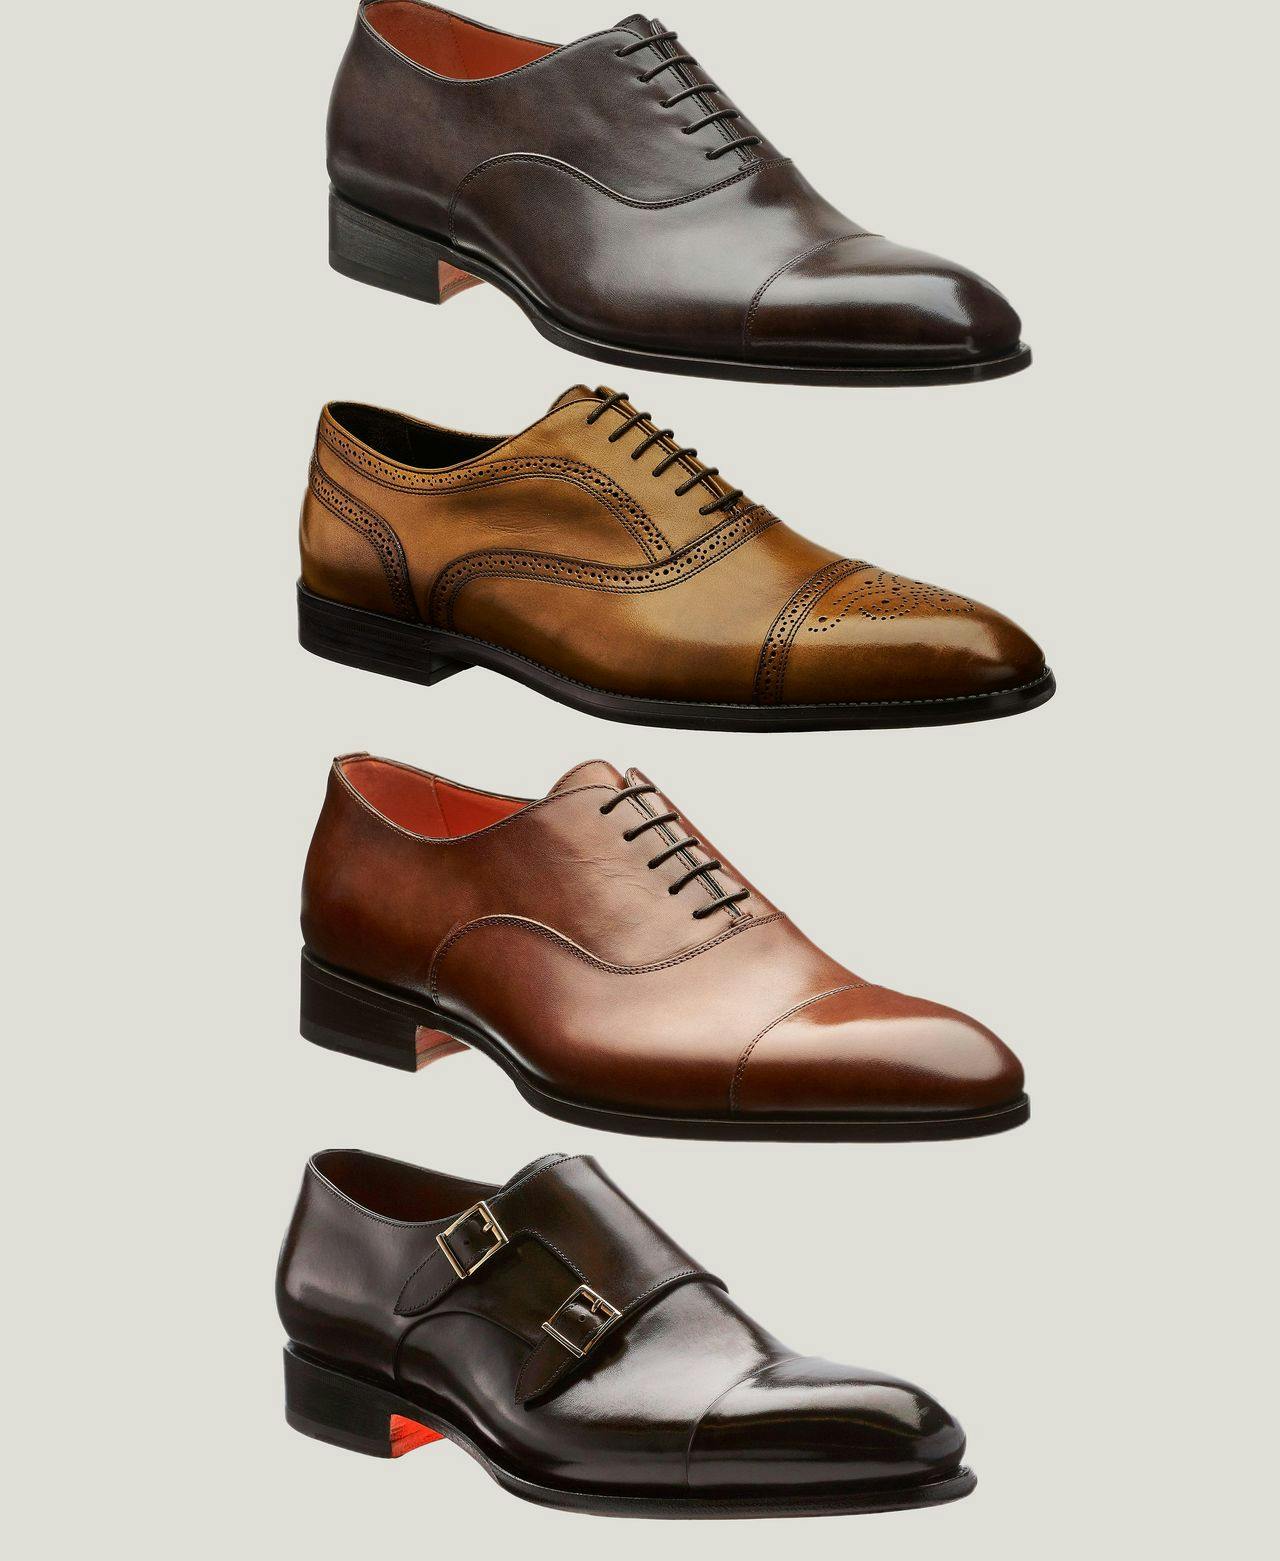 Quatre paires de chaussures sont présentées dans des couleurs différentes